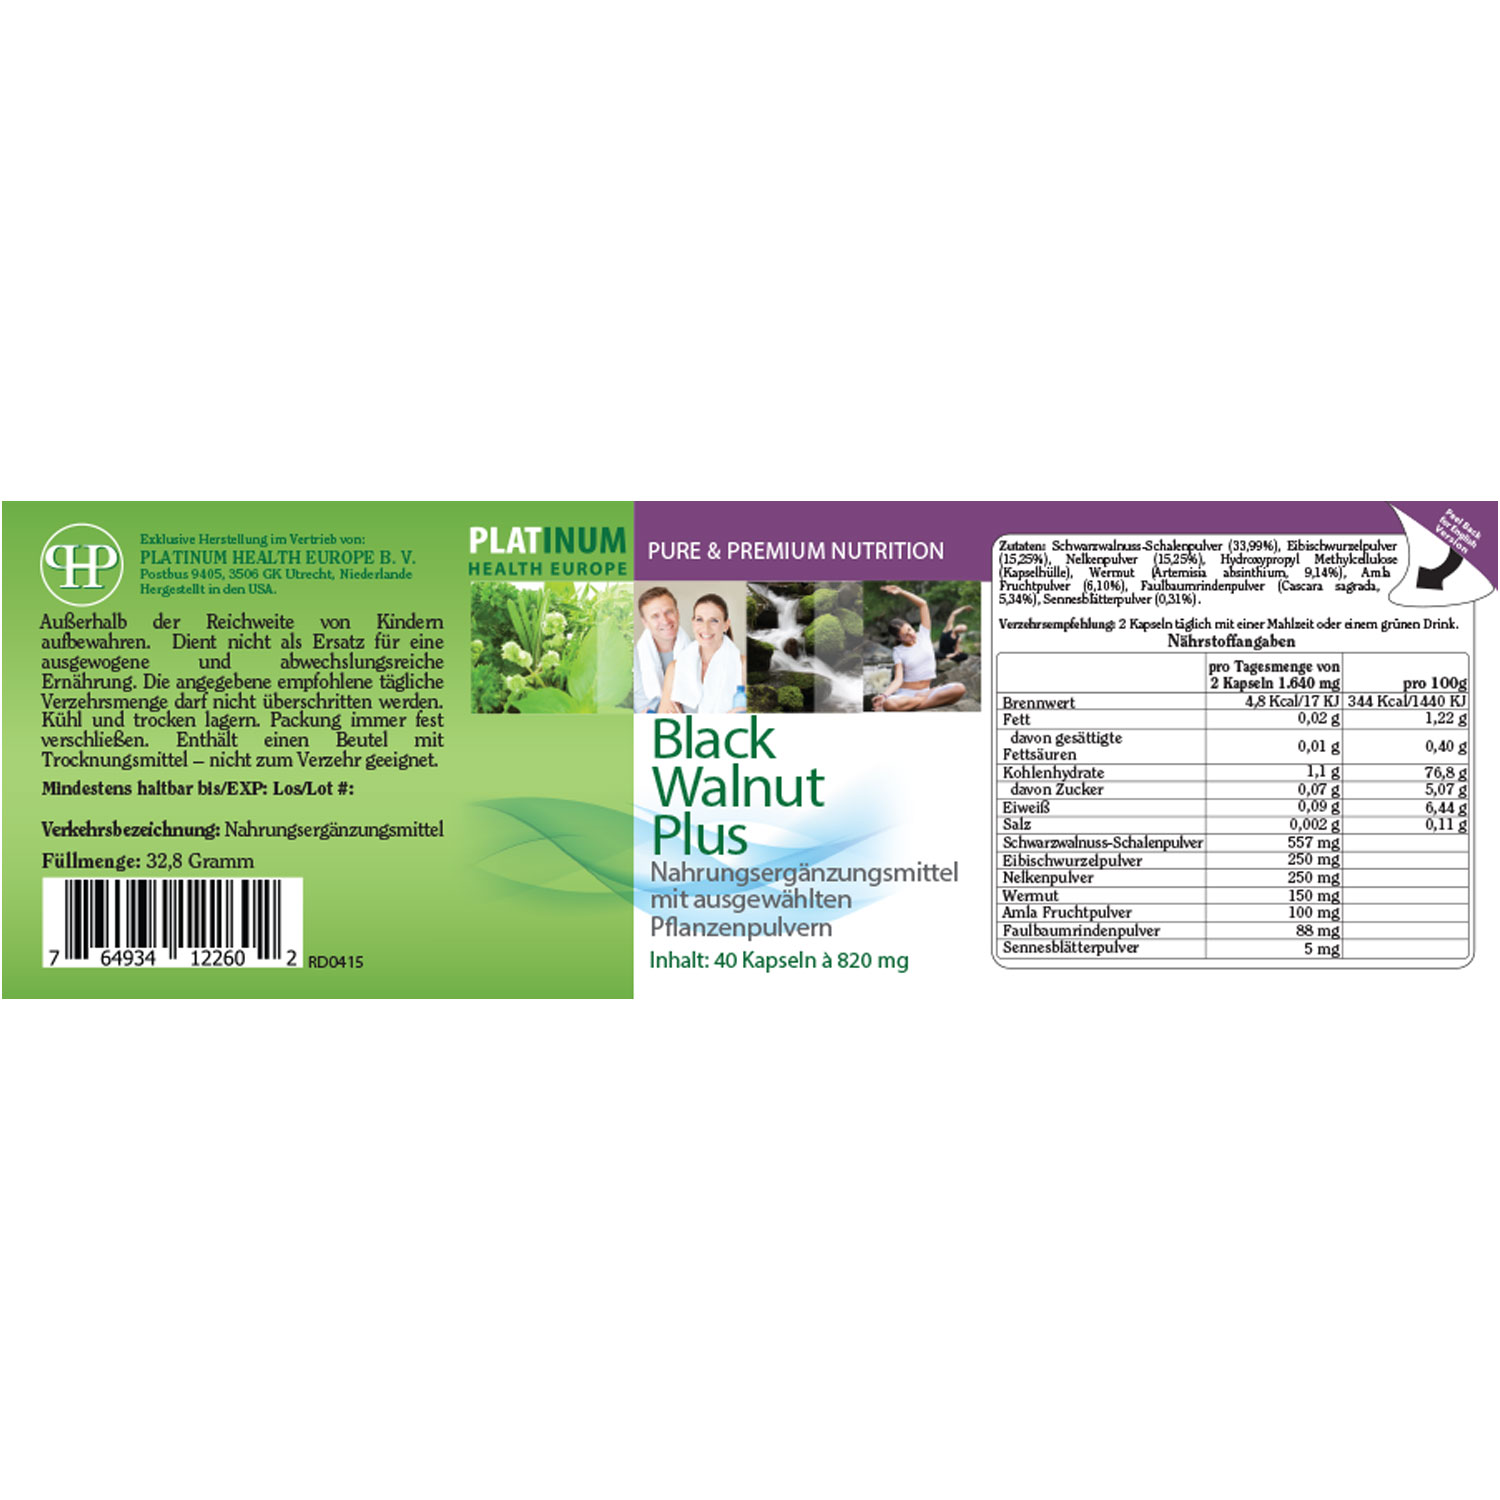 Black Walnut Plus von Platinum Health - Etikett